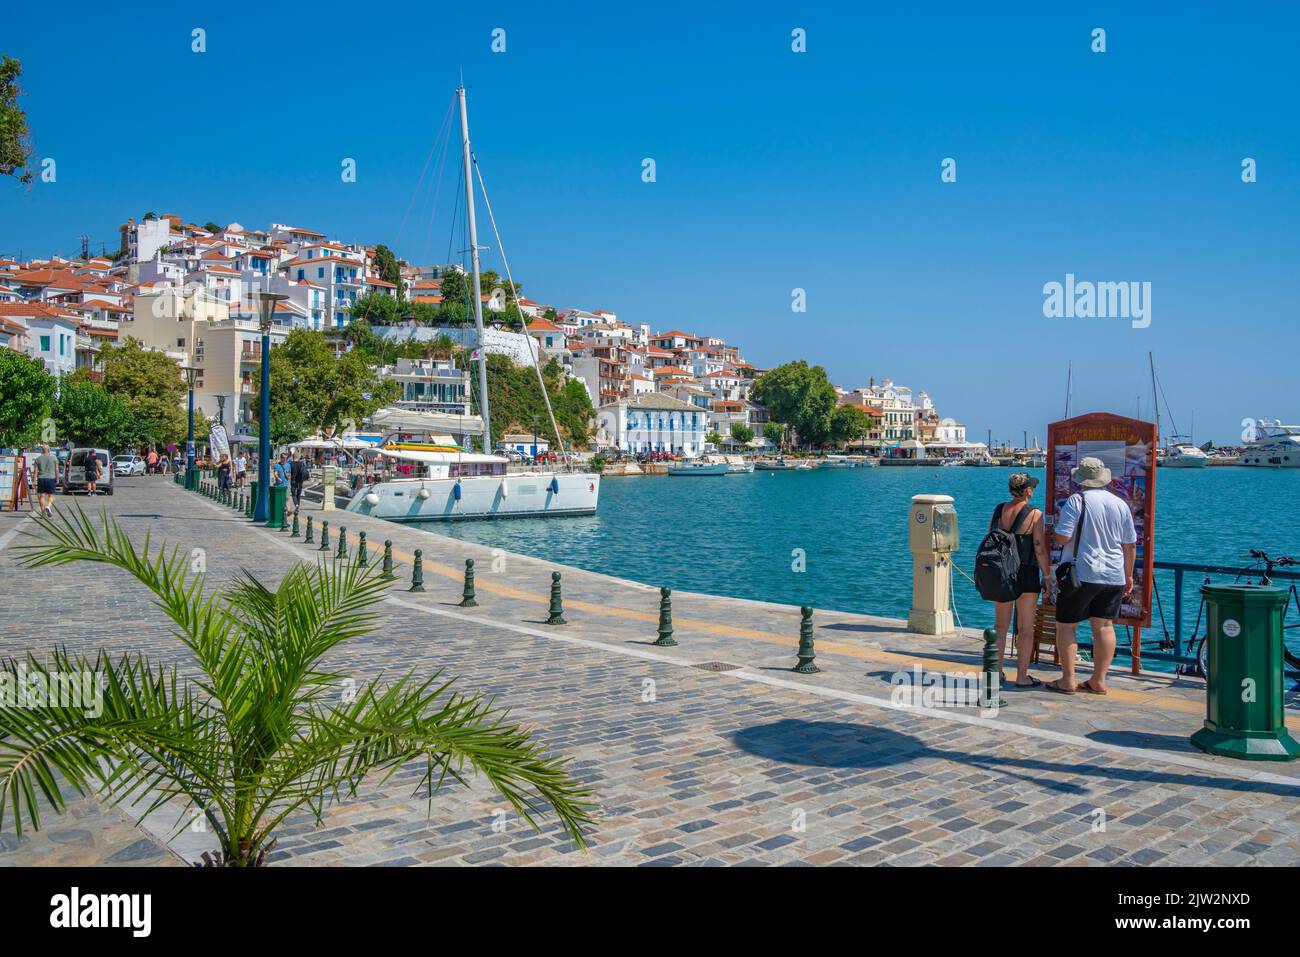 Blick auf die Altstadt und die Promenade, Skopelos-Stadt, Skopelos-Insel, Sporaden-Inseln, griechische Inseln, Griechenland, Europa Stockfoto